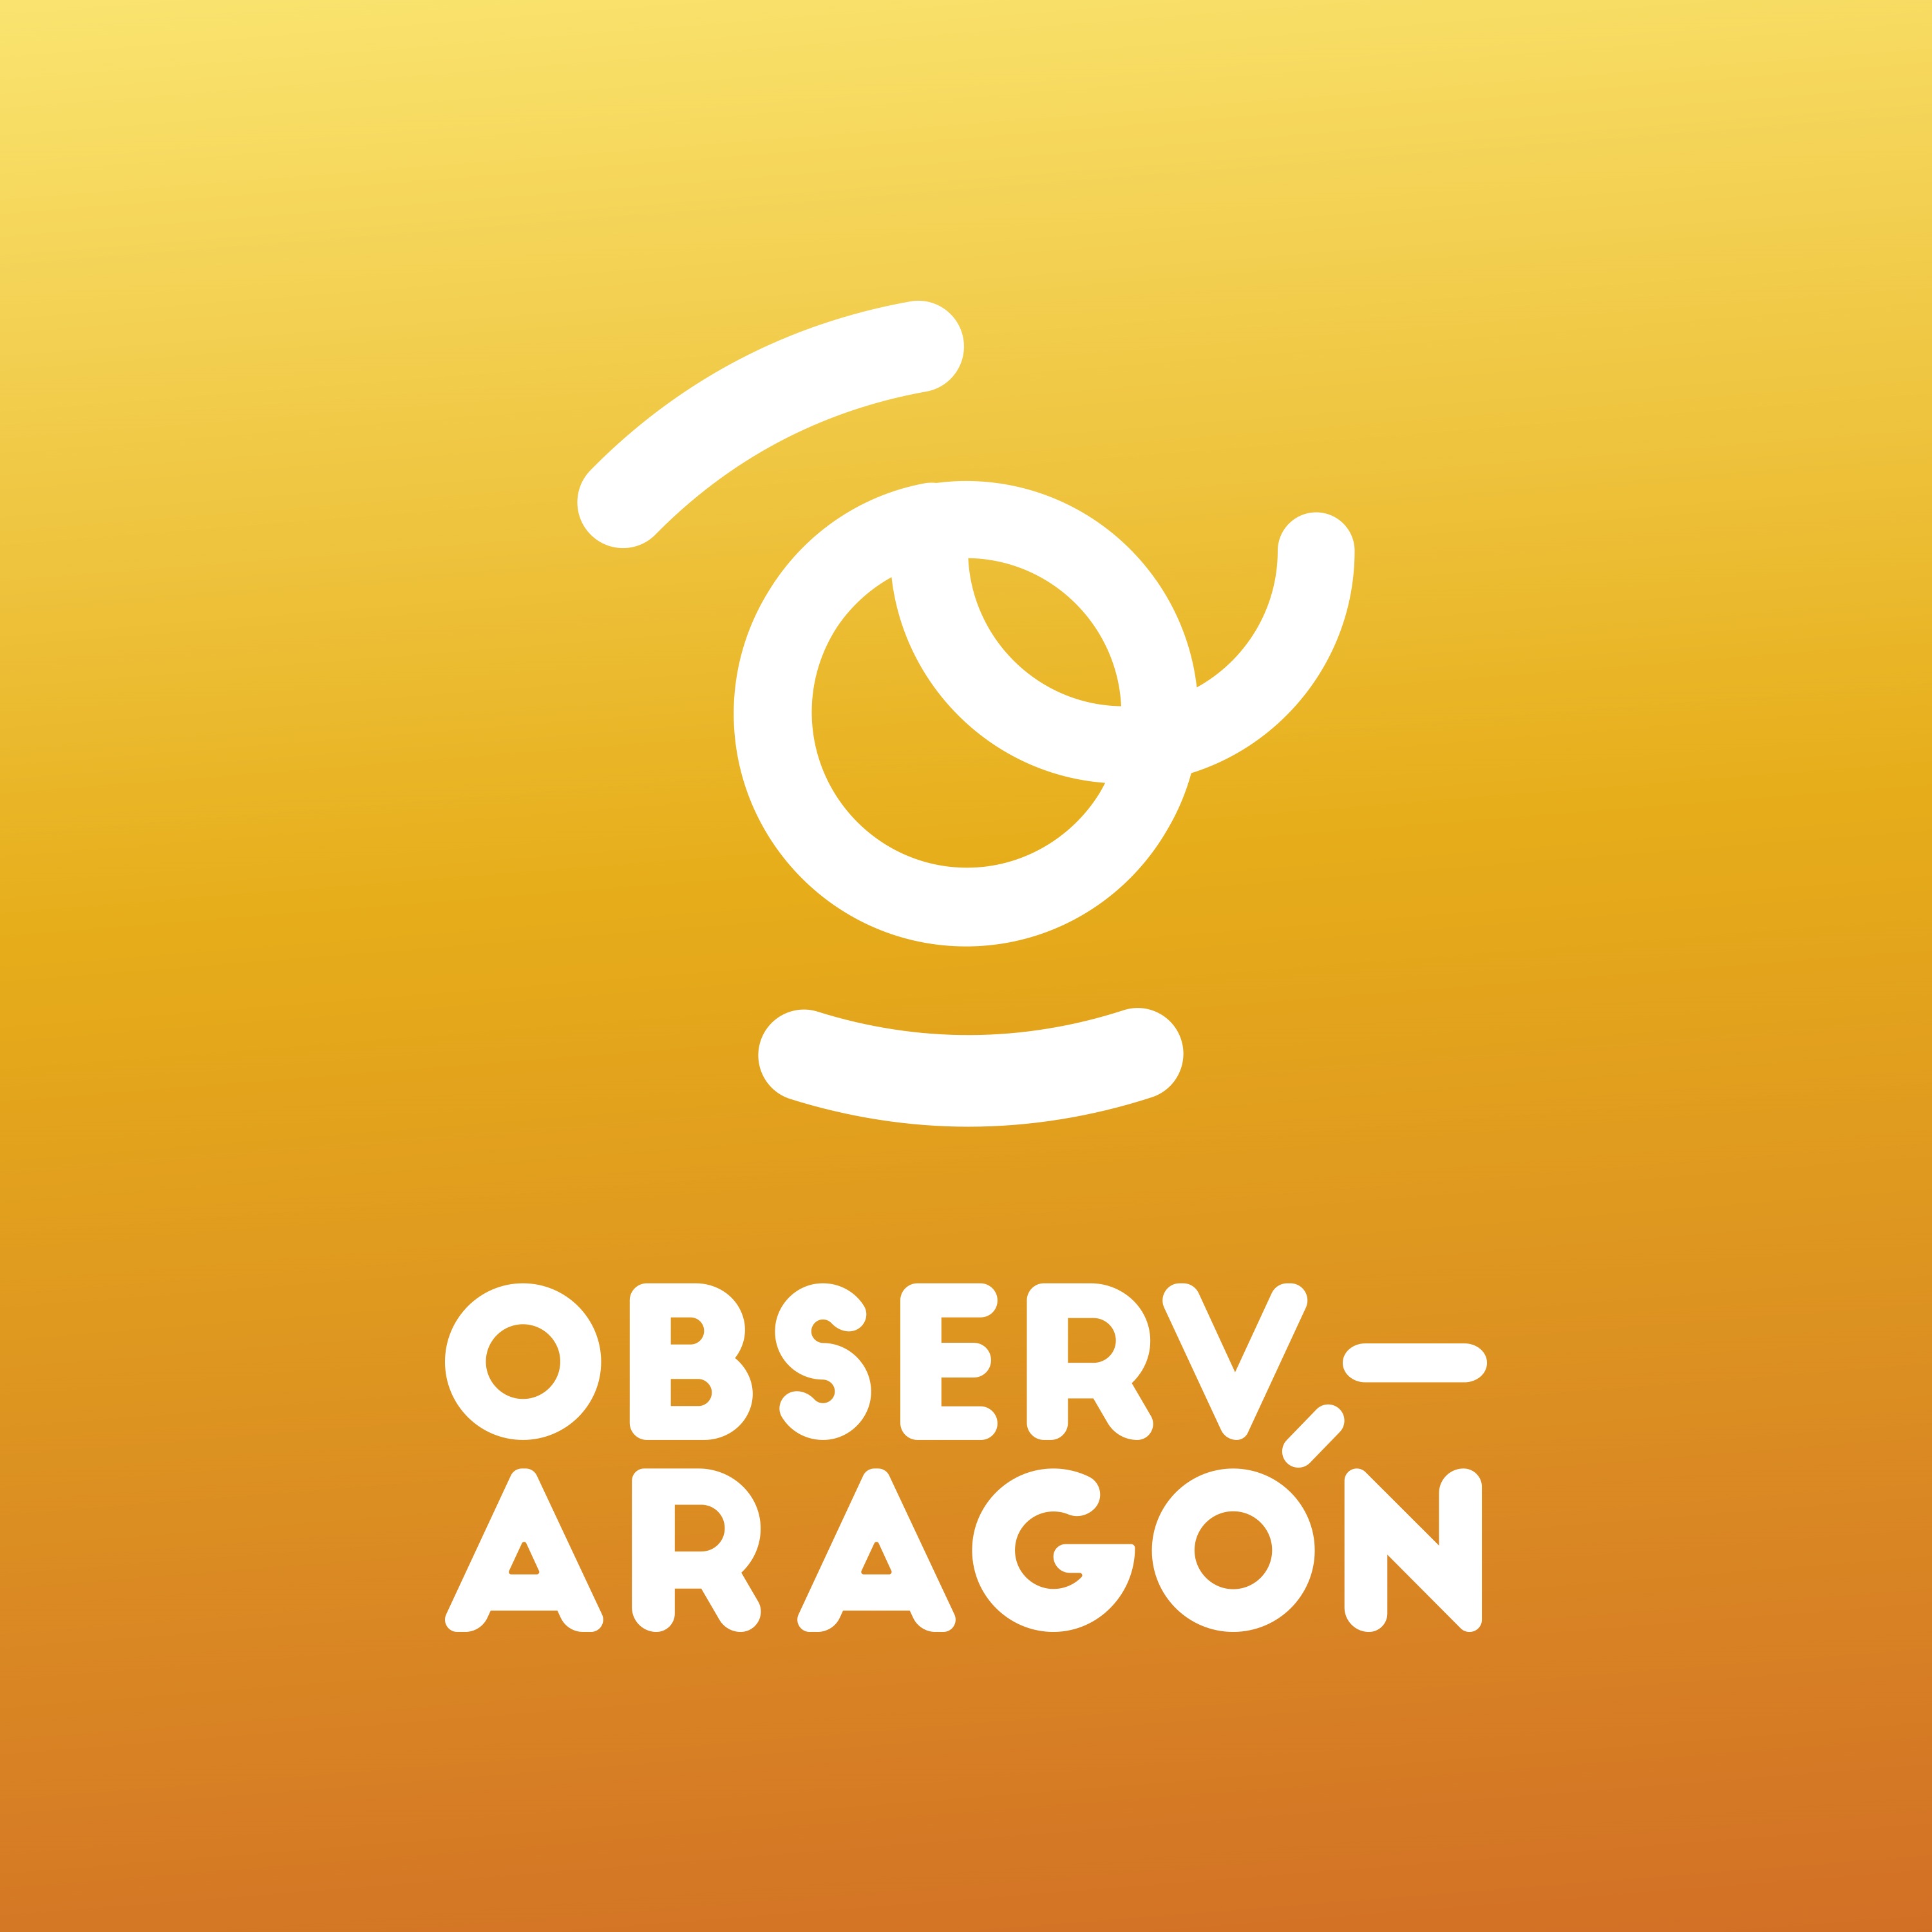 Sobre fondo naranja en blanco aparece la letra o con forma de @ y debajo la leyenda observ-aragon.